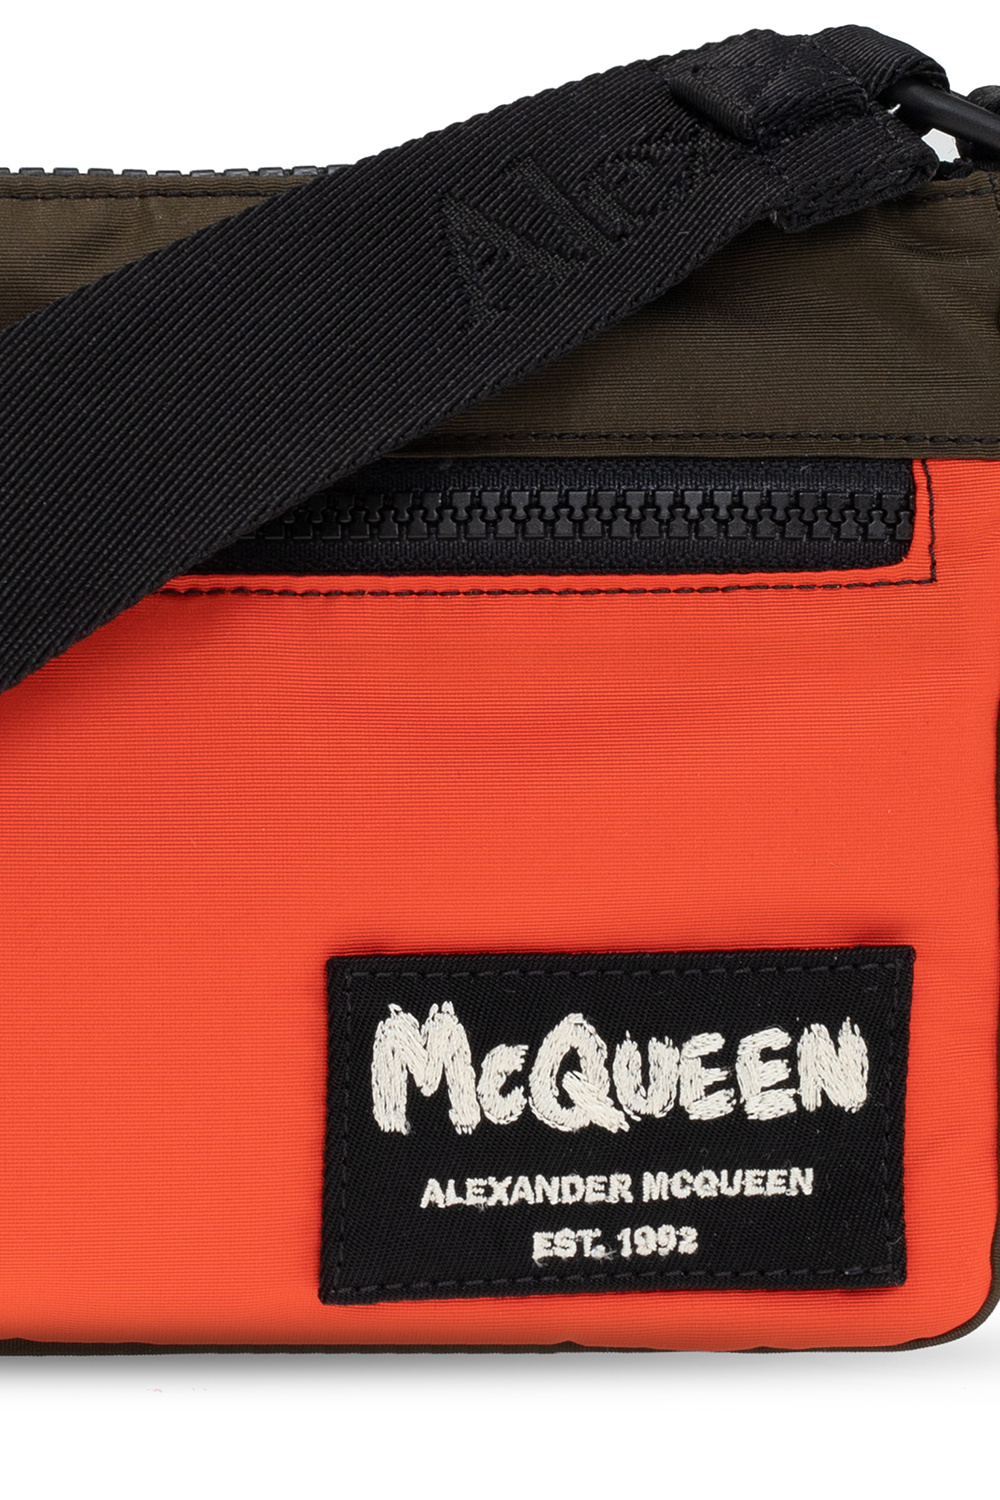 Alexander McQueen Шикарные женские кеды alexander mcqueen Platform pink